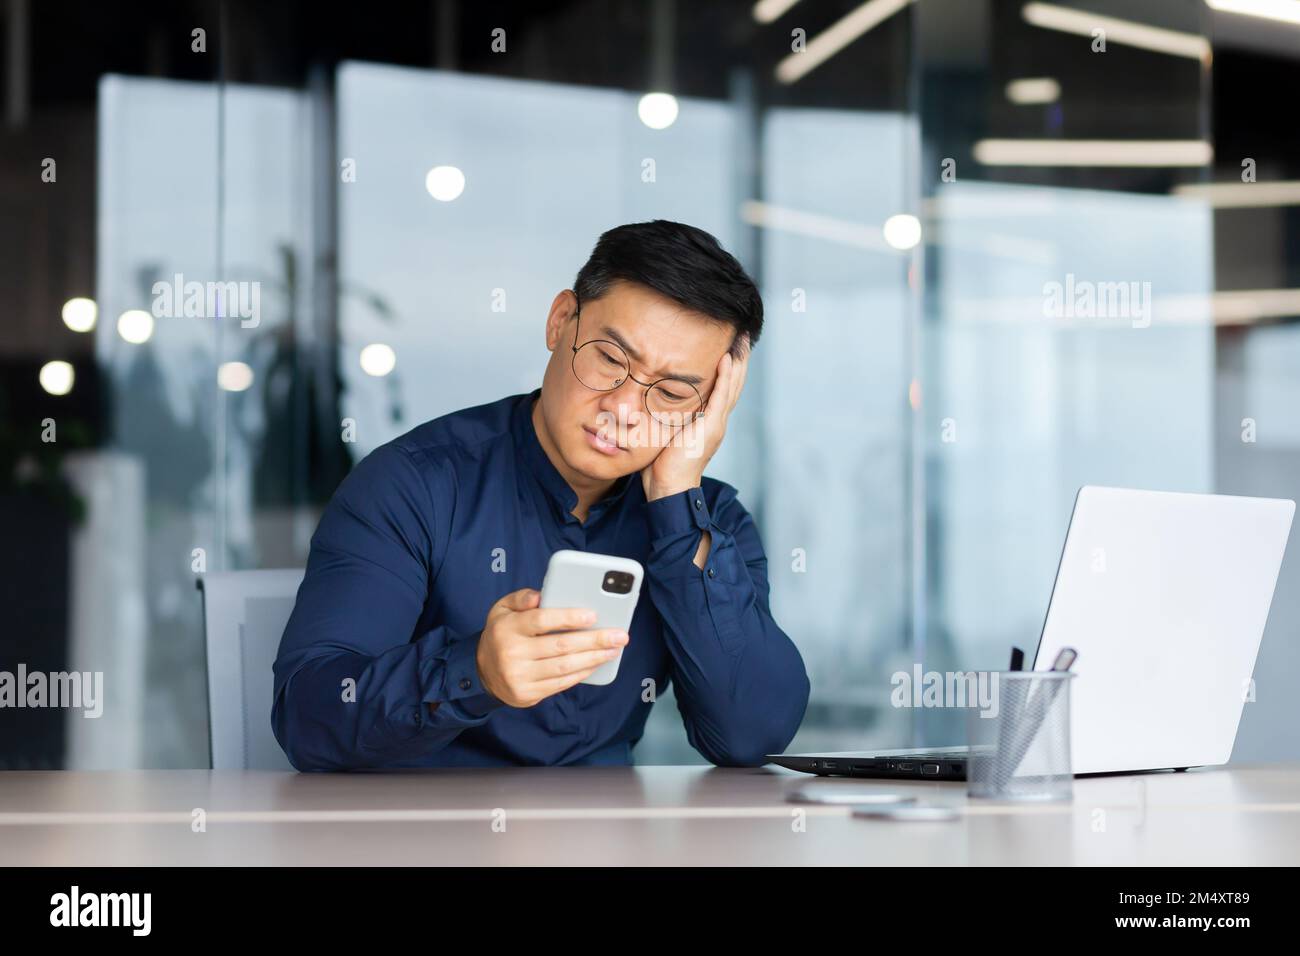 Portrait d'un jeune asiatique inquiet assis dans le bureau à la table, tenant sa tête avec sa main, regardant malheureusement le téléphone. S'ennuyer, a reçu de mauvaises nouvelles, des messages. Banque D'Images